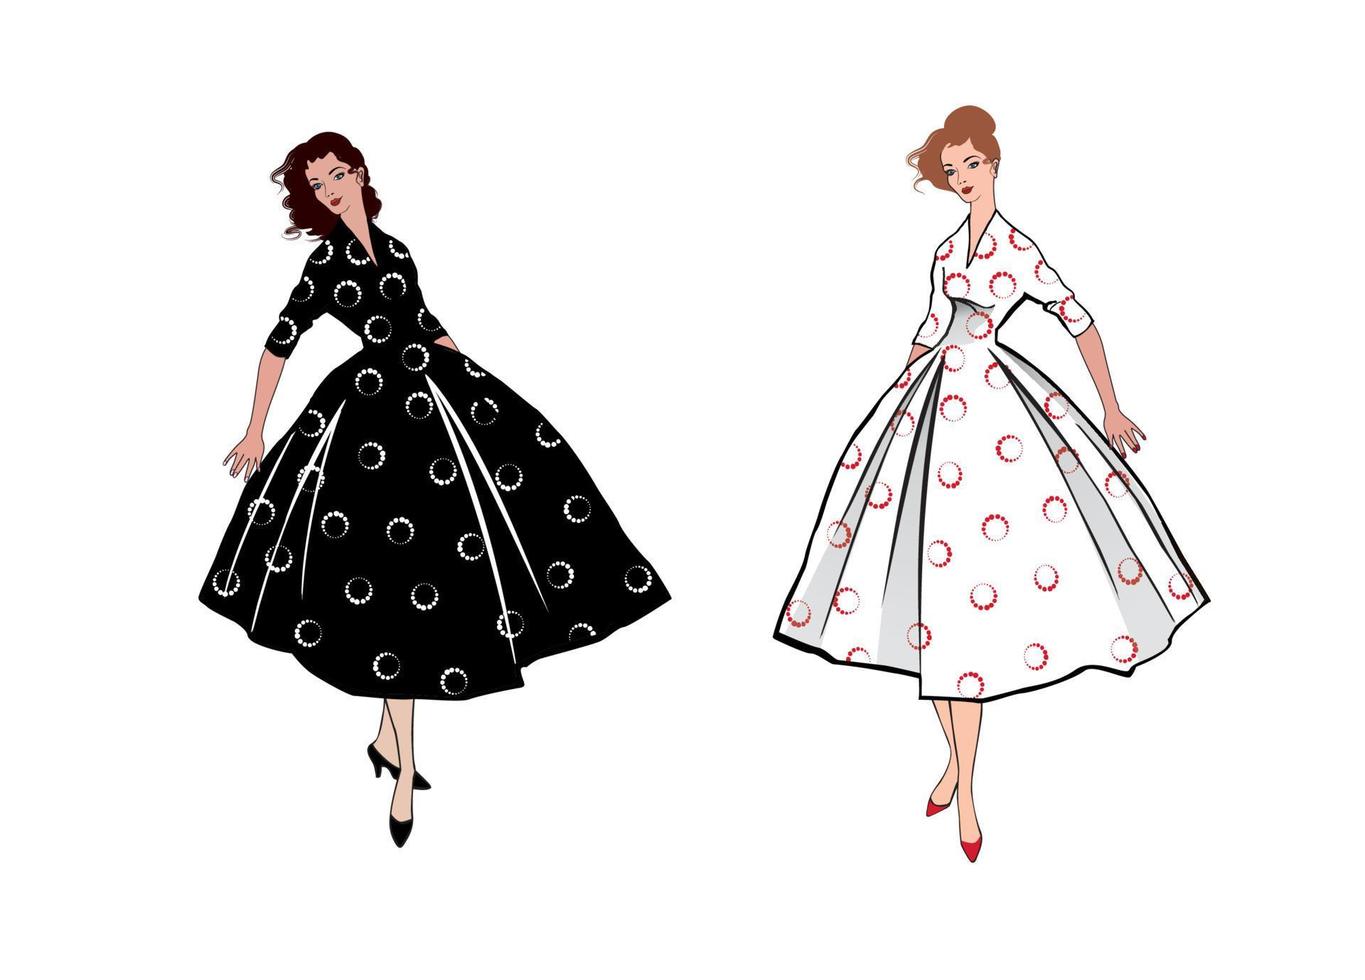 chicas vestidas a la moda con estilo estilo años 50 años 60. fiesta vestidos de